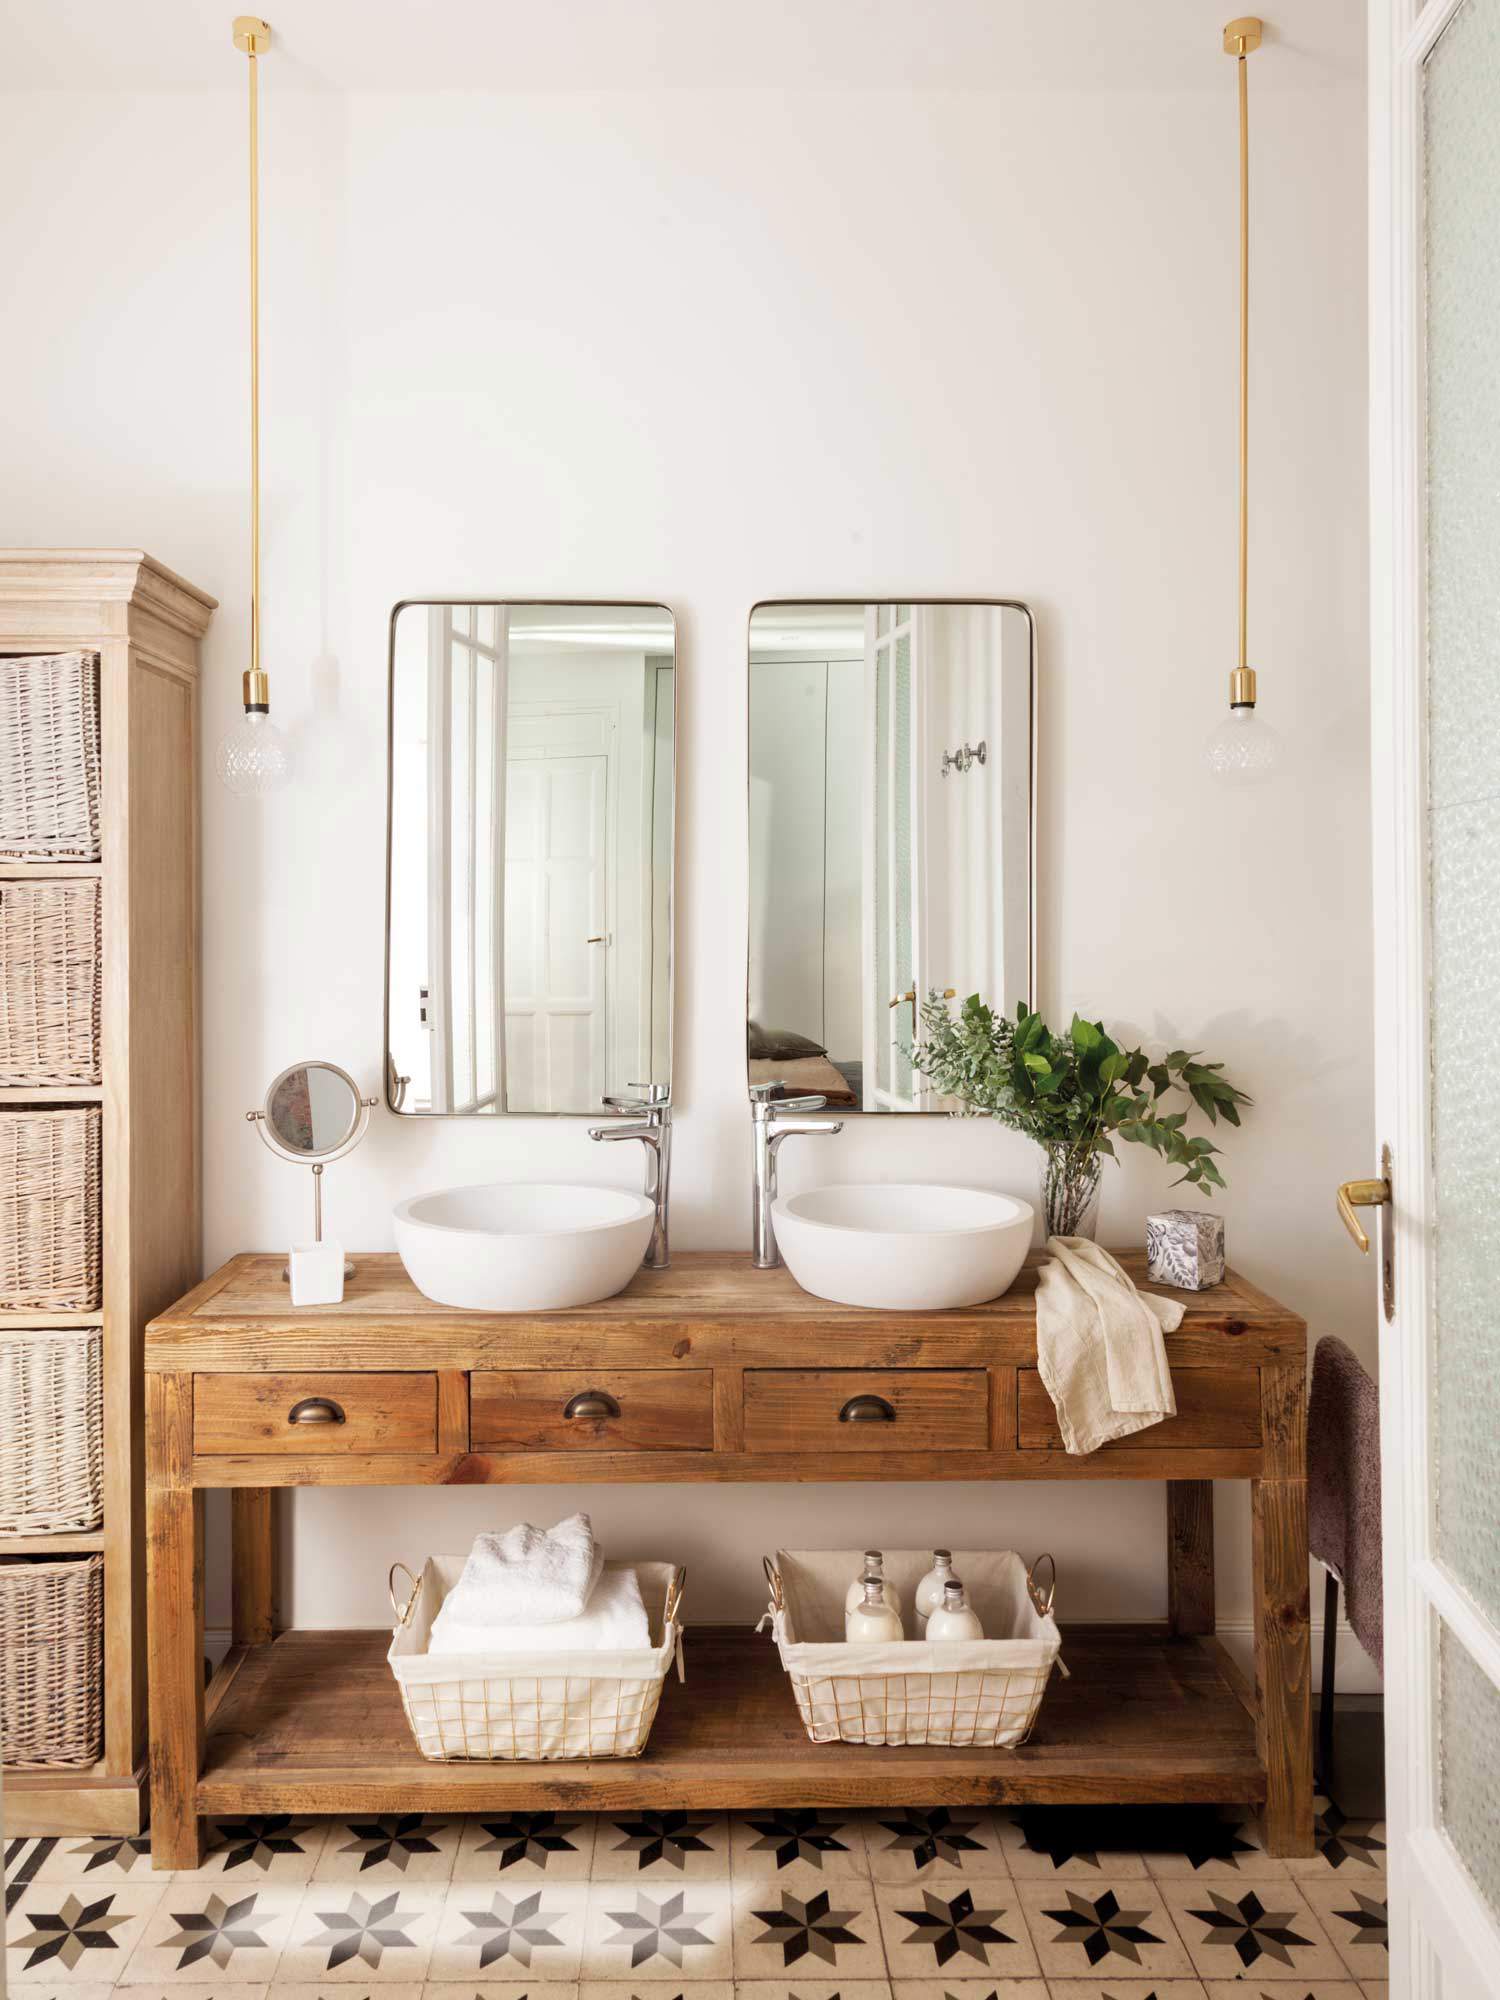 Baño con consola de madera a modo de mueble bajolavabo, lavamanos exentos redondos, espejos, lámparas suspendidas y suelo hidraúlico